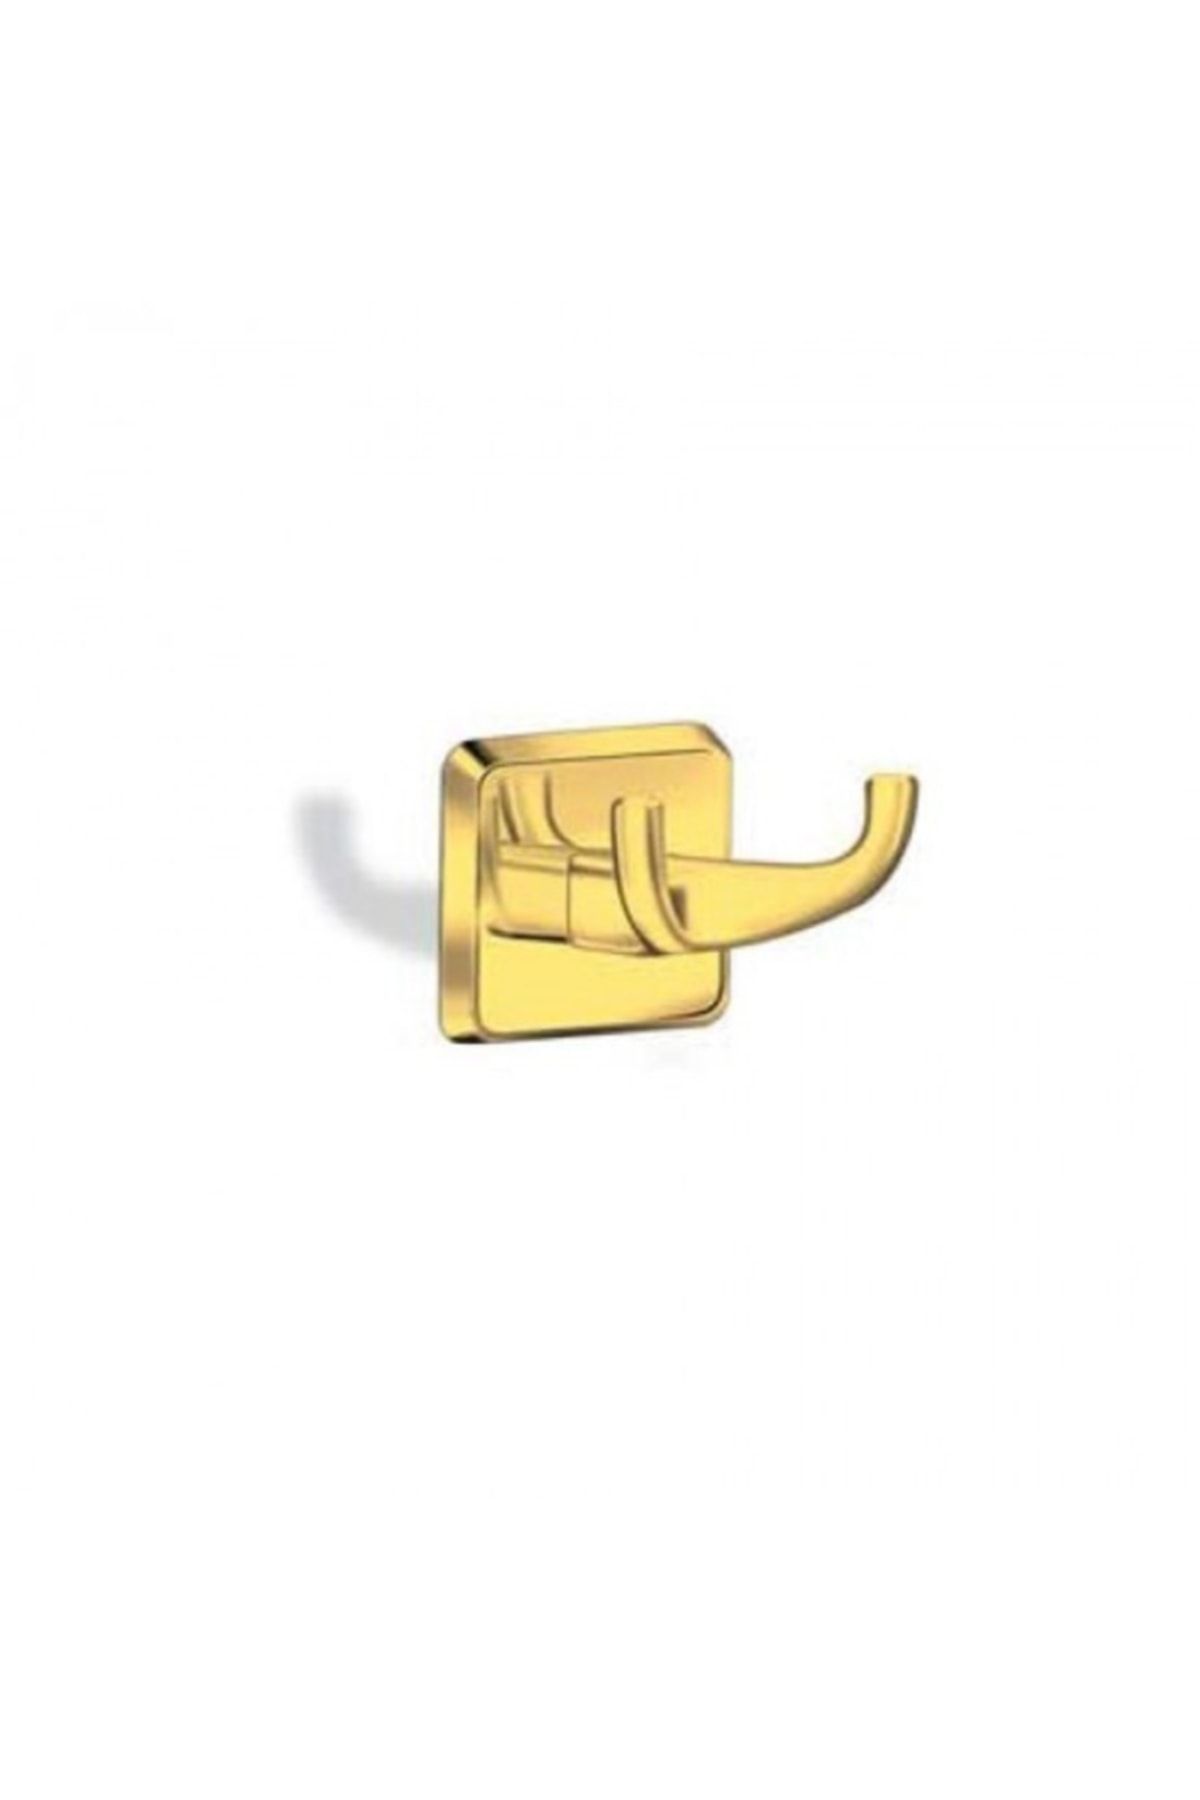 Milet Kare Lüx Gold Ikili Askılı Bornozluk Altın Mlg37011-k_0